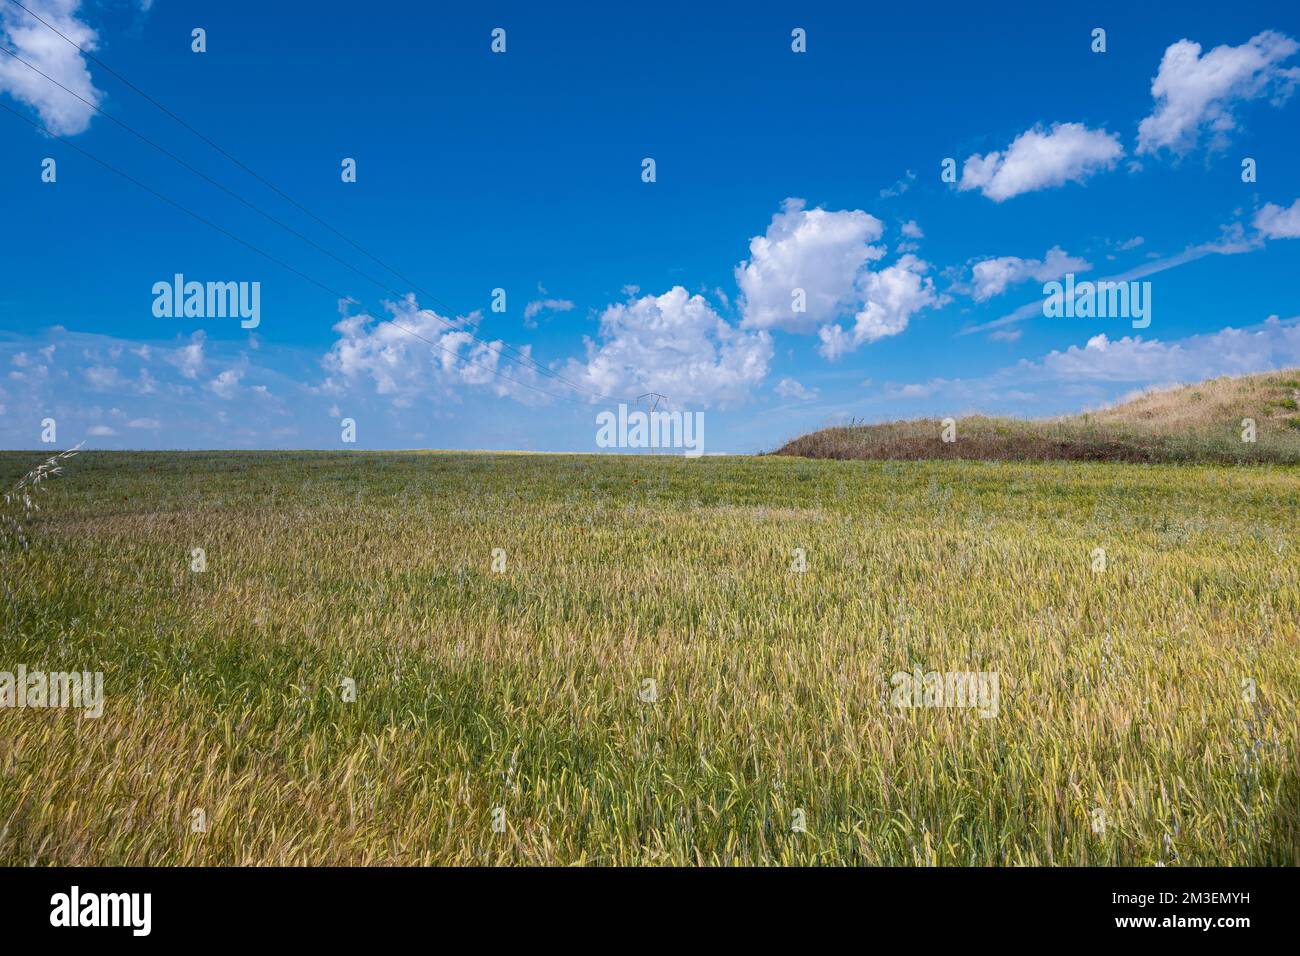 Ein riesiges, offenes Feld welliger Körner vor sonnenbeleuchtetem Himmelshintergrund Stockfoto